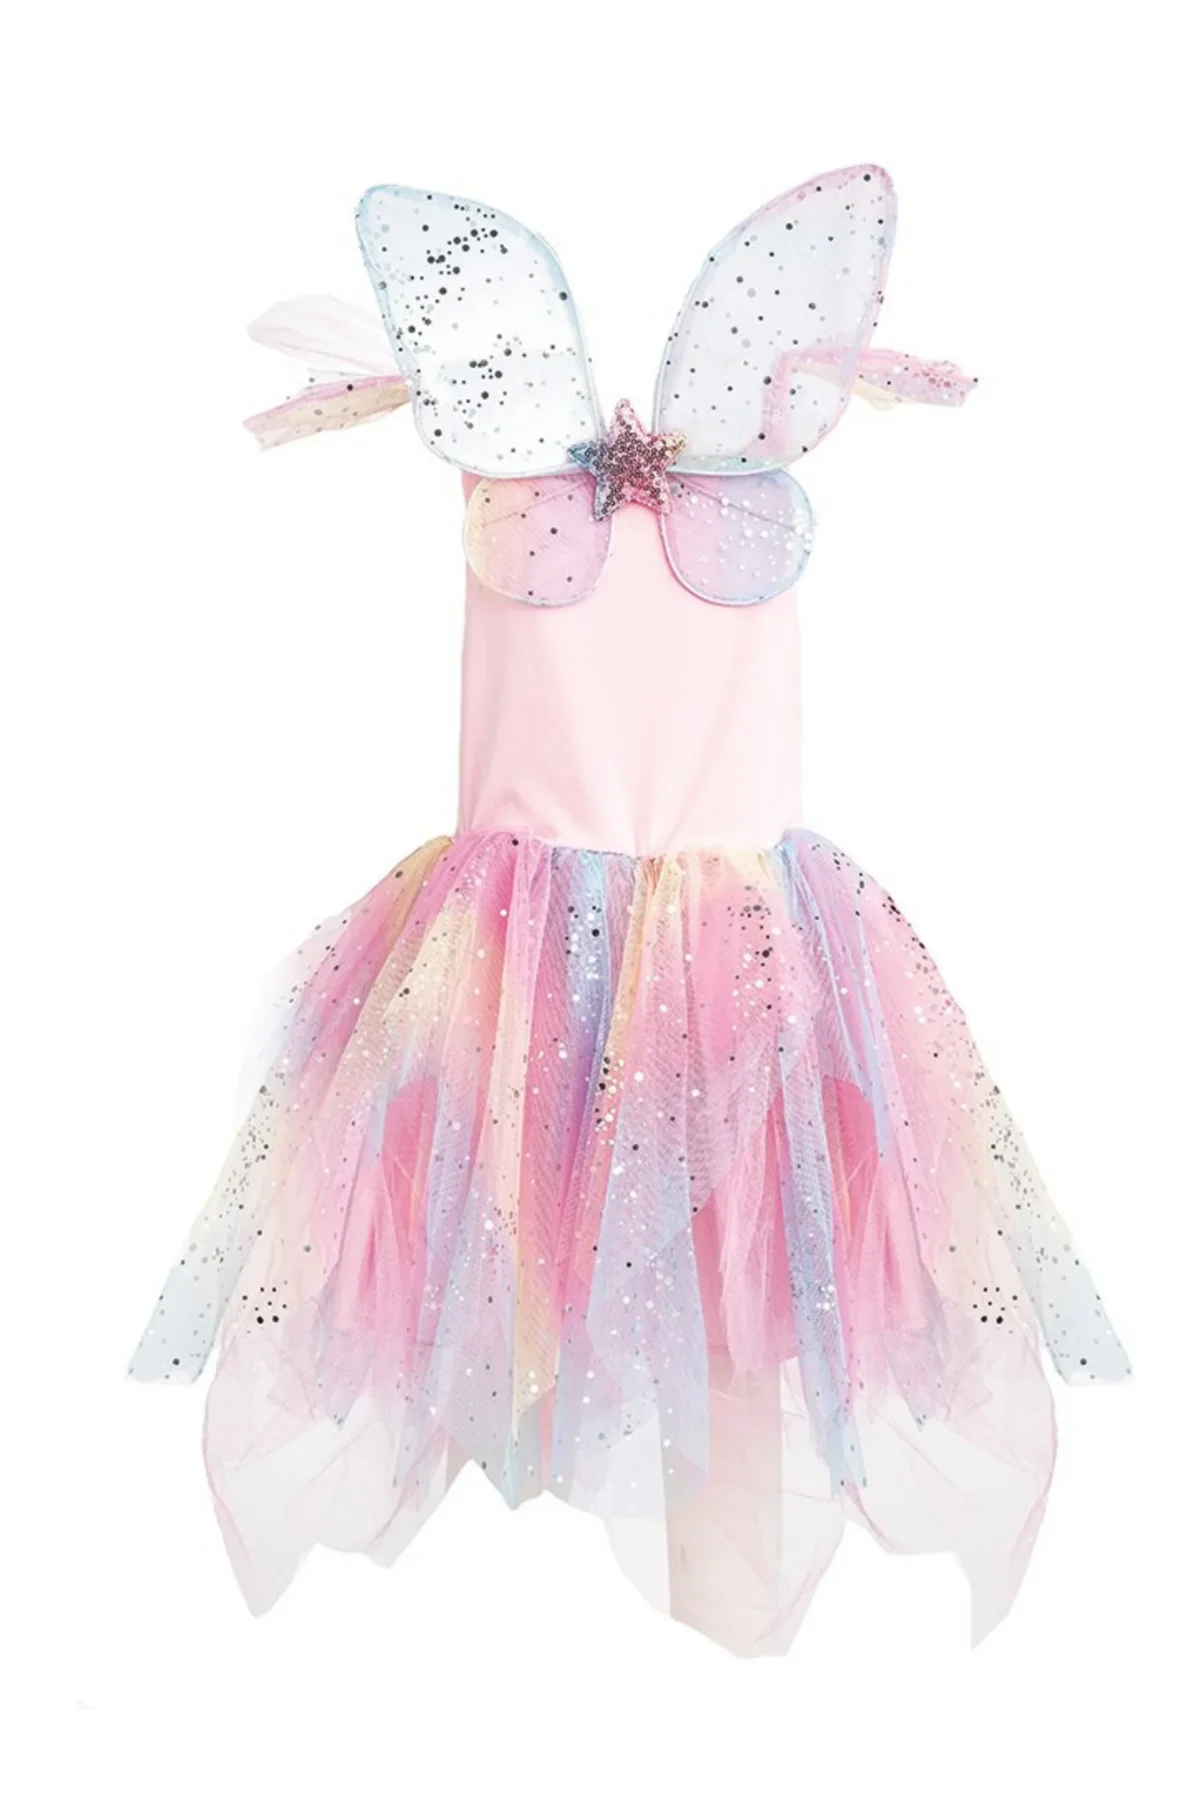 Great Pretenders Rainbow Fairy Dress & Wings Great Pretenders kleidid, keebid ja kostüümid - HellyK - Kvaliteetsed lasteriided, villariided, barefoot jalatsid